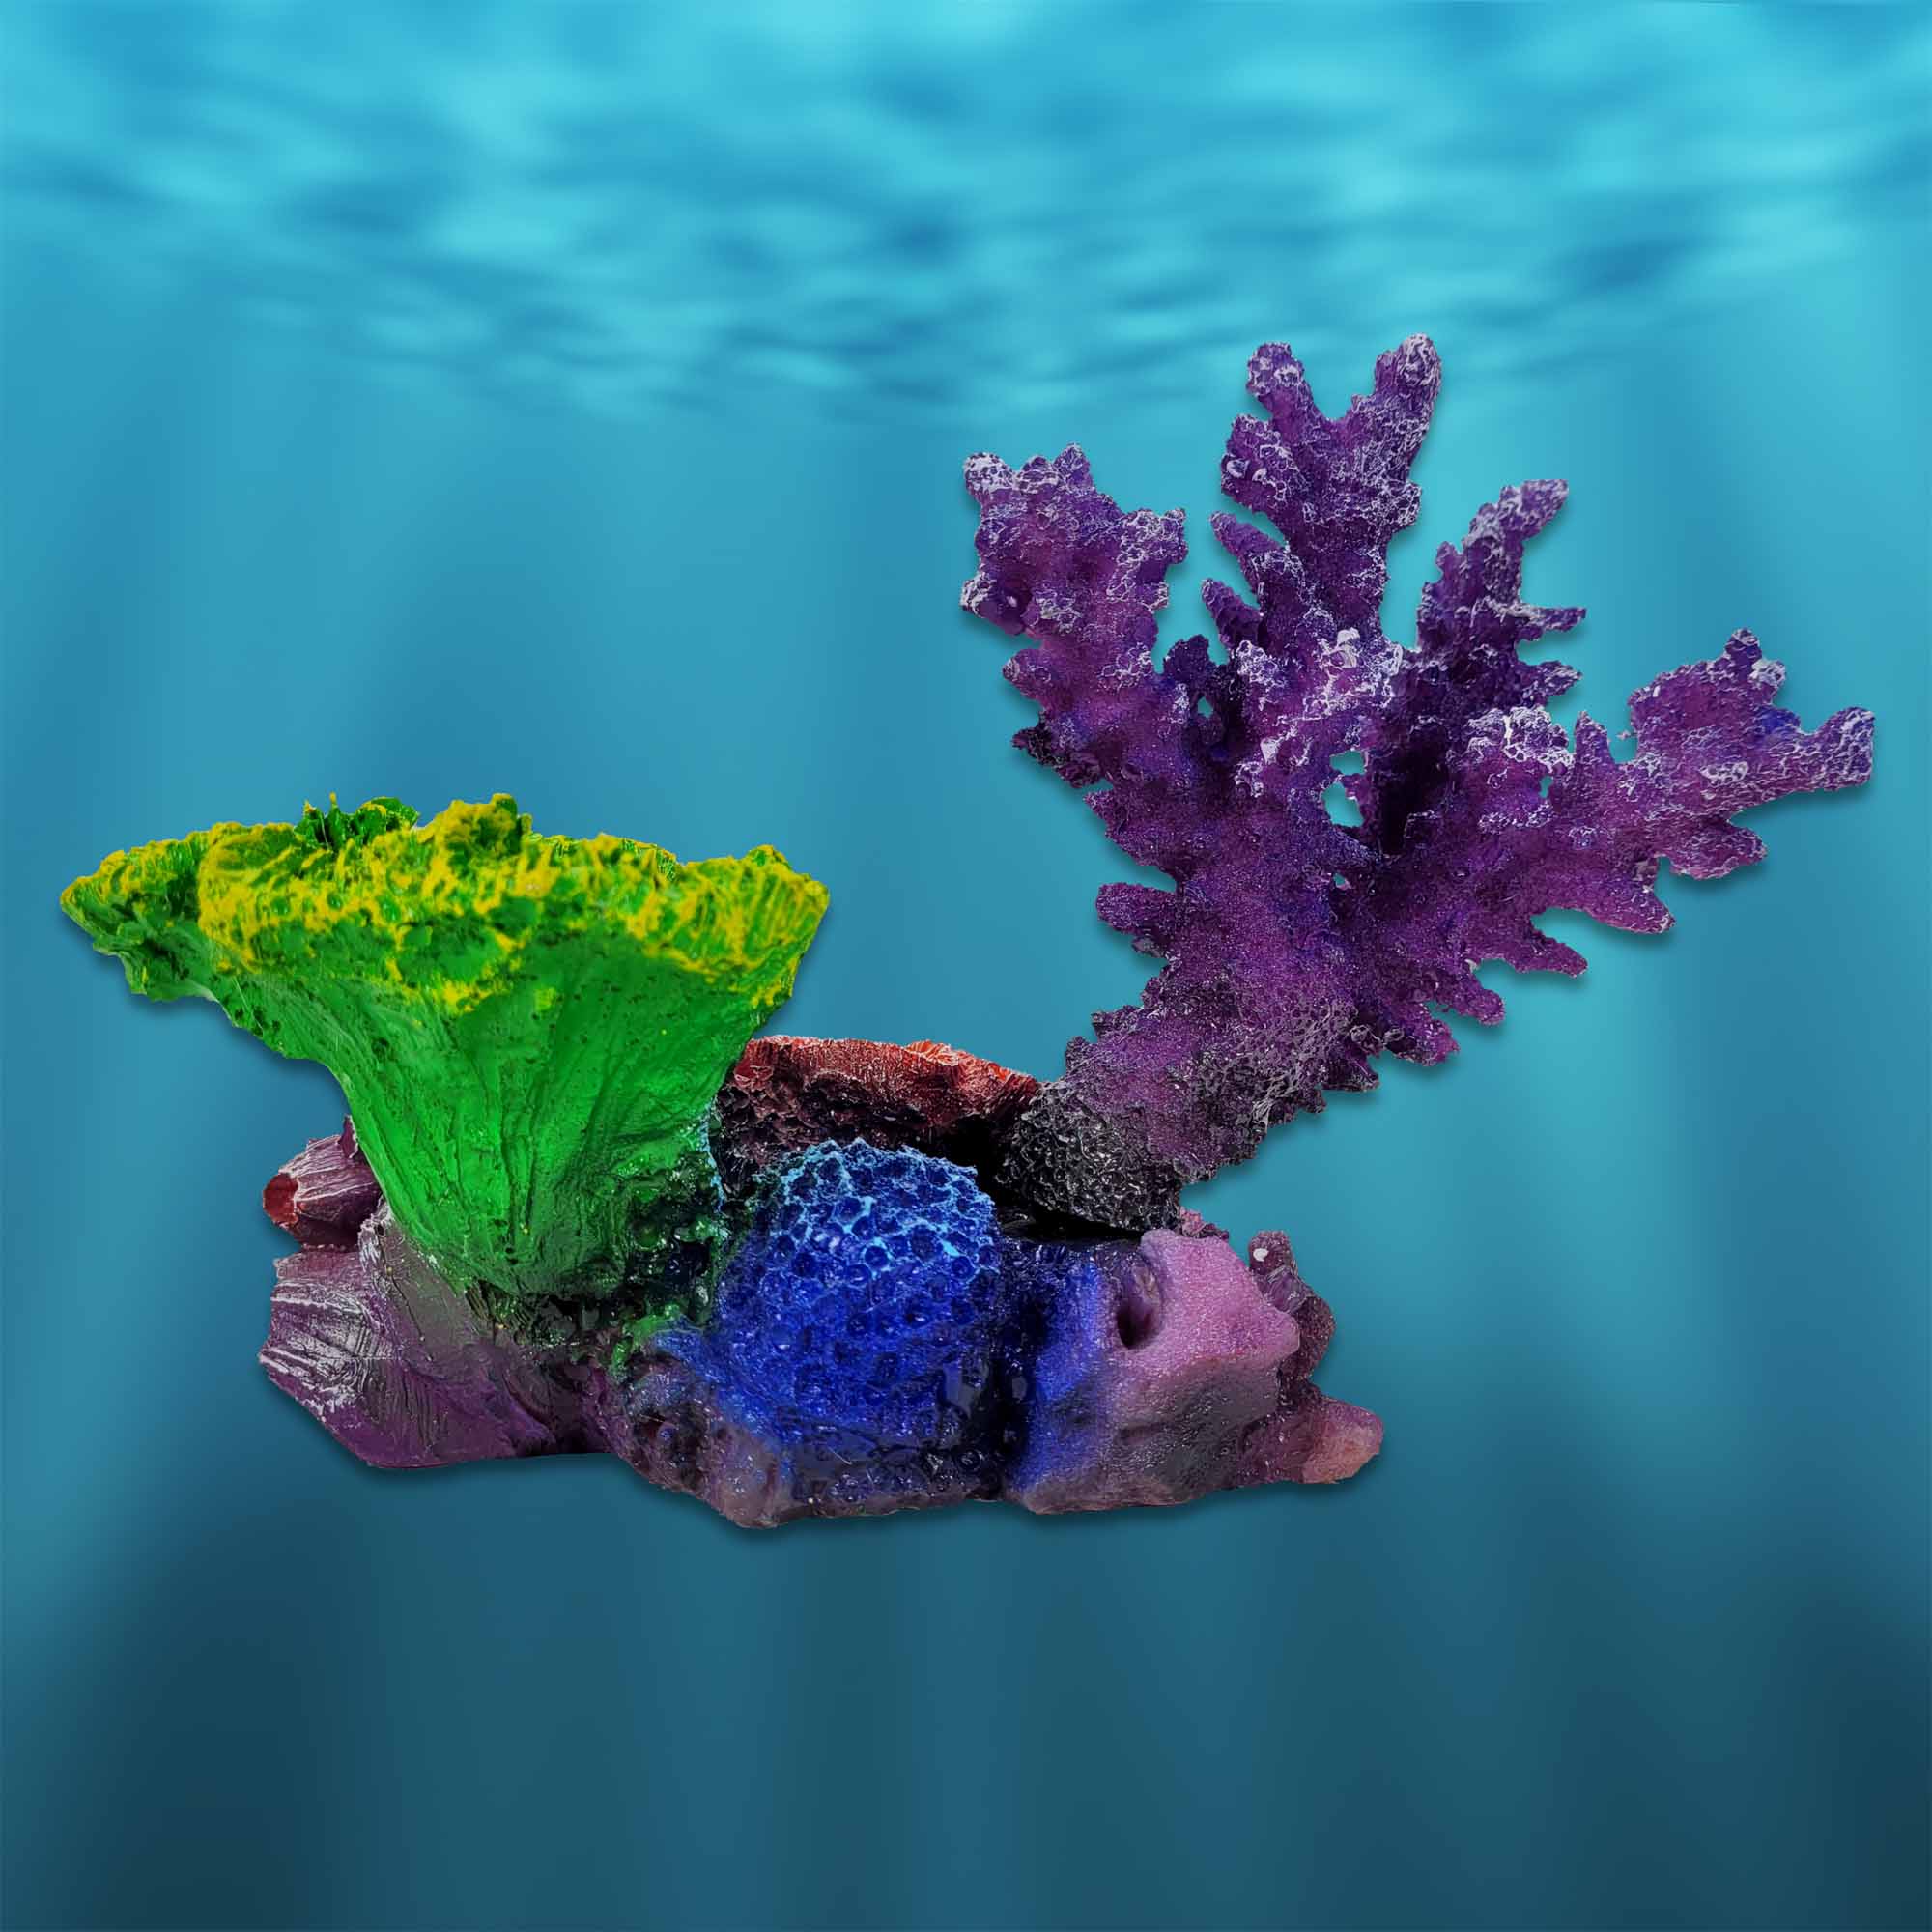 PNP0009 Artificial Fake Coral Aquarium Decor for Marine Tanks